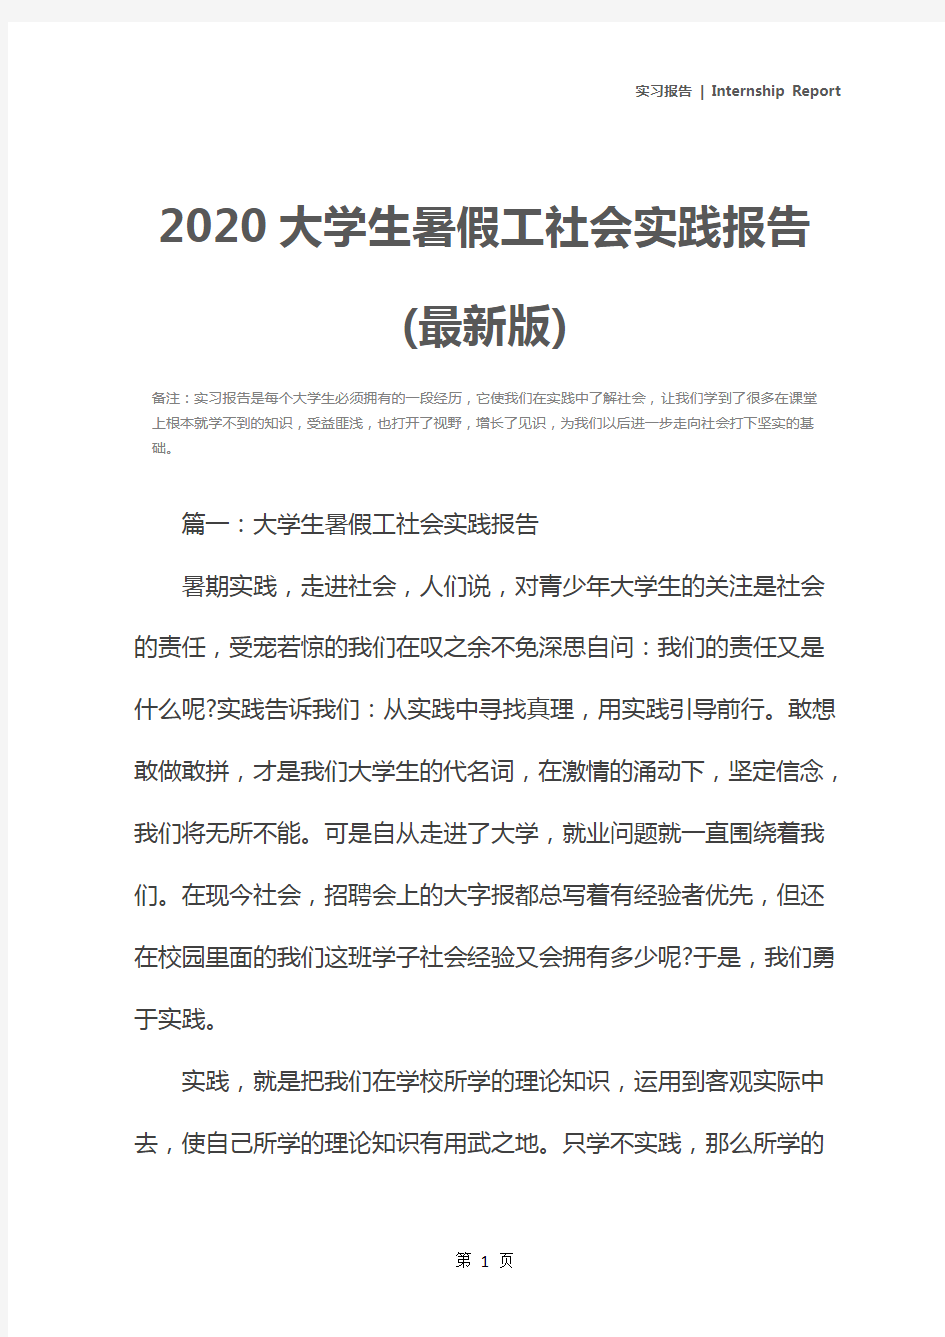 2020大学生暑假工社会实践报告(最新版)